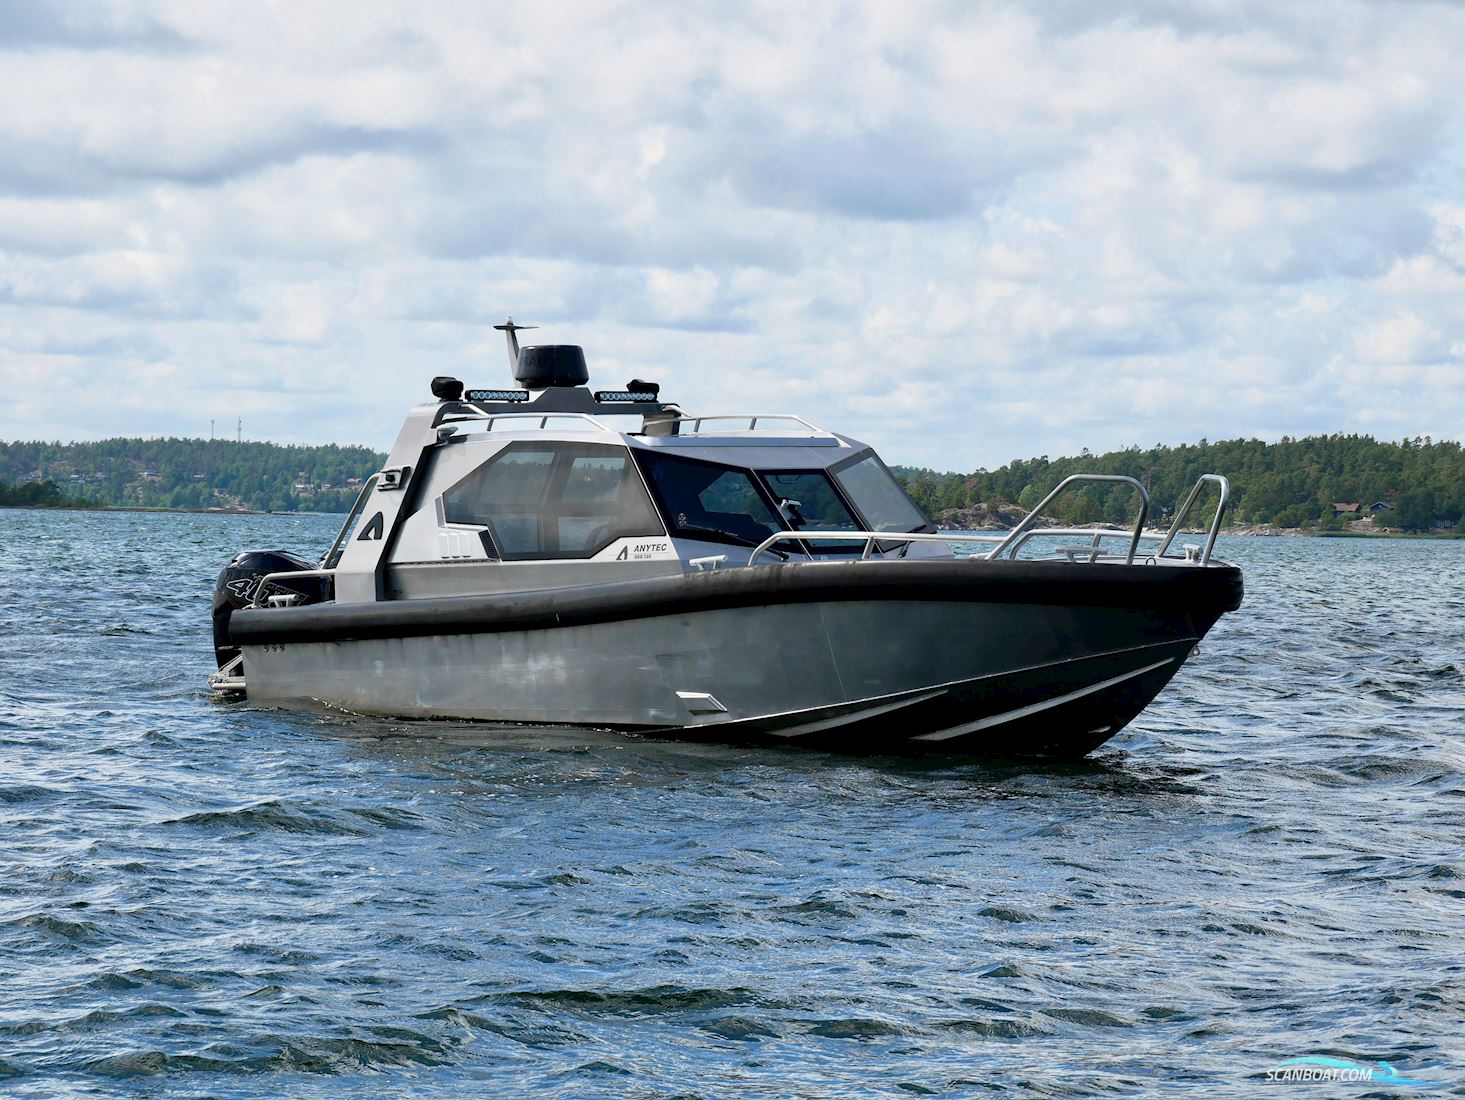 Anytec 868 Cab Motorbåt 2017, med Mercury motor, Sverige